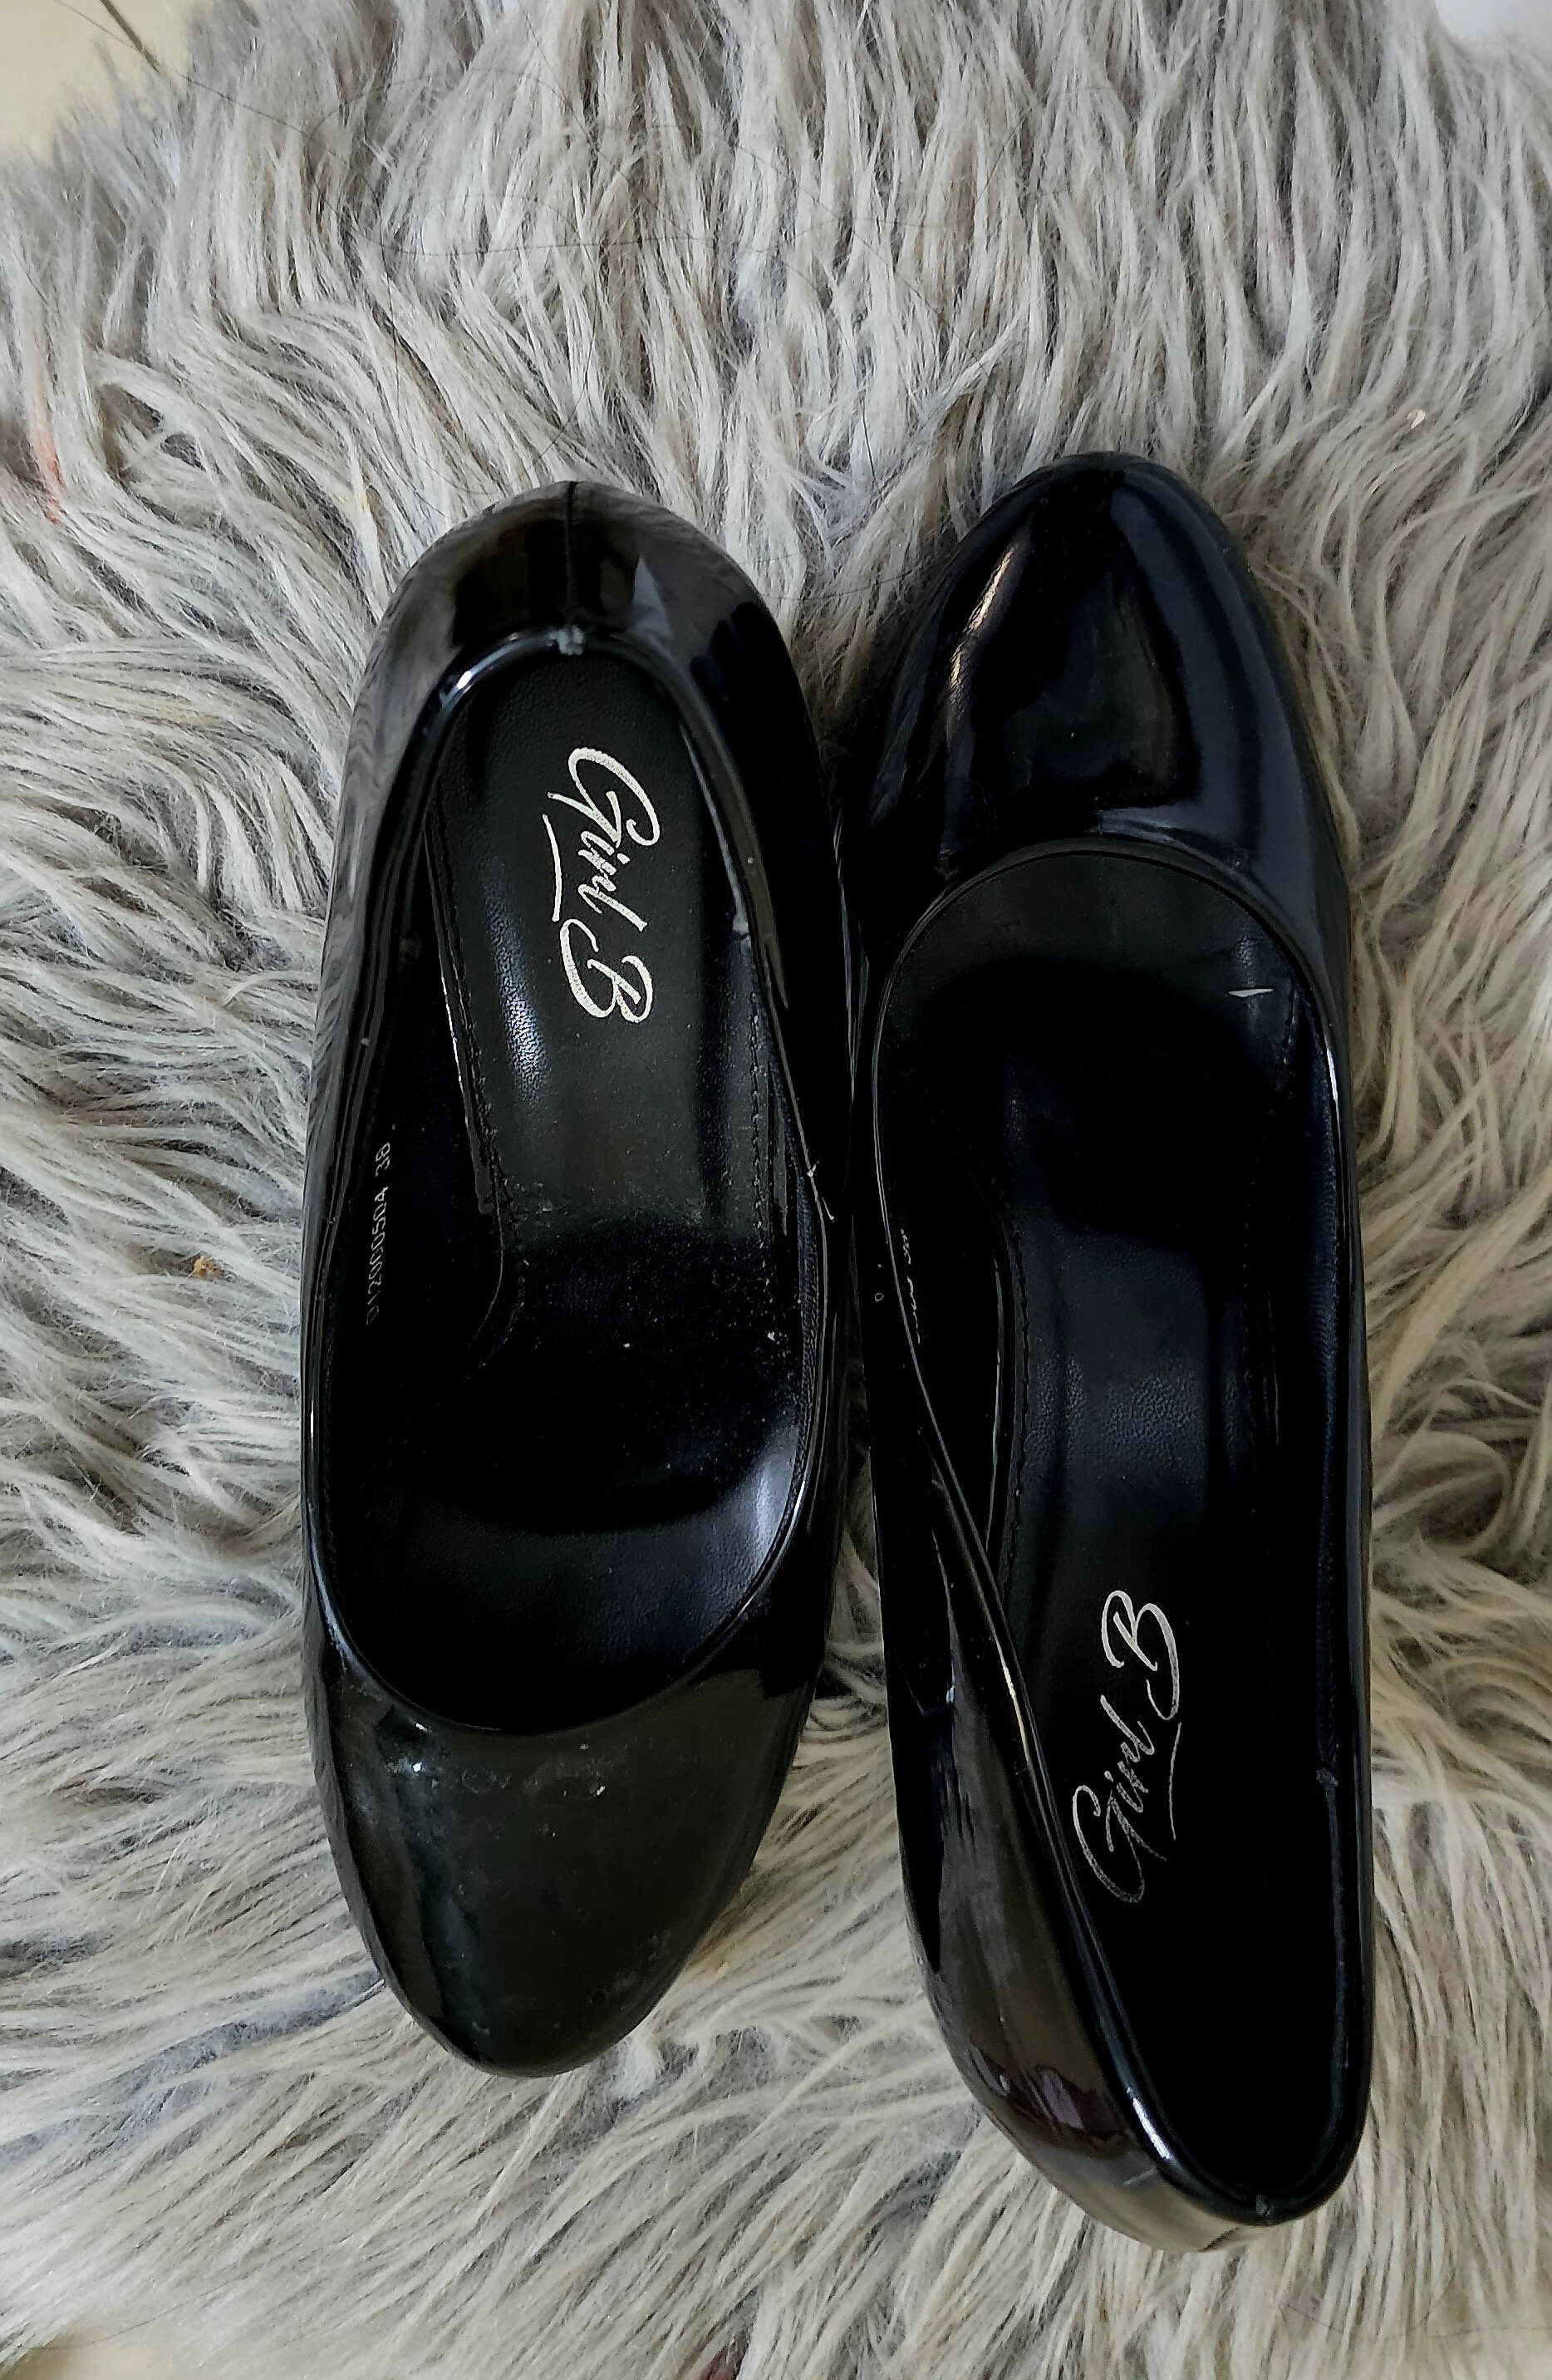 Borjan | Black heels (Size: 38 ) | Women Shoes | Worn Once